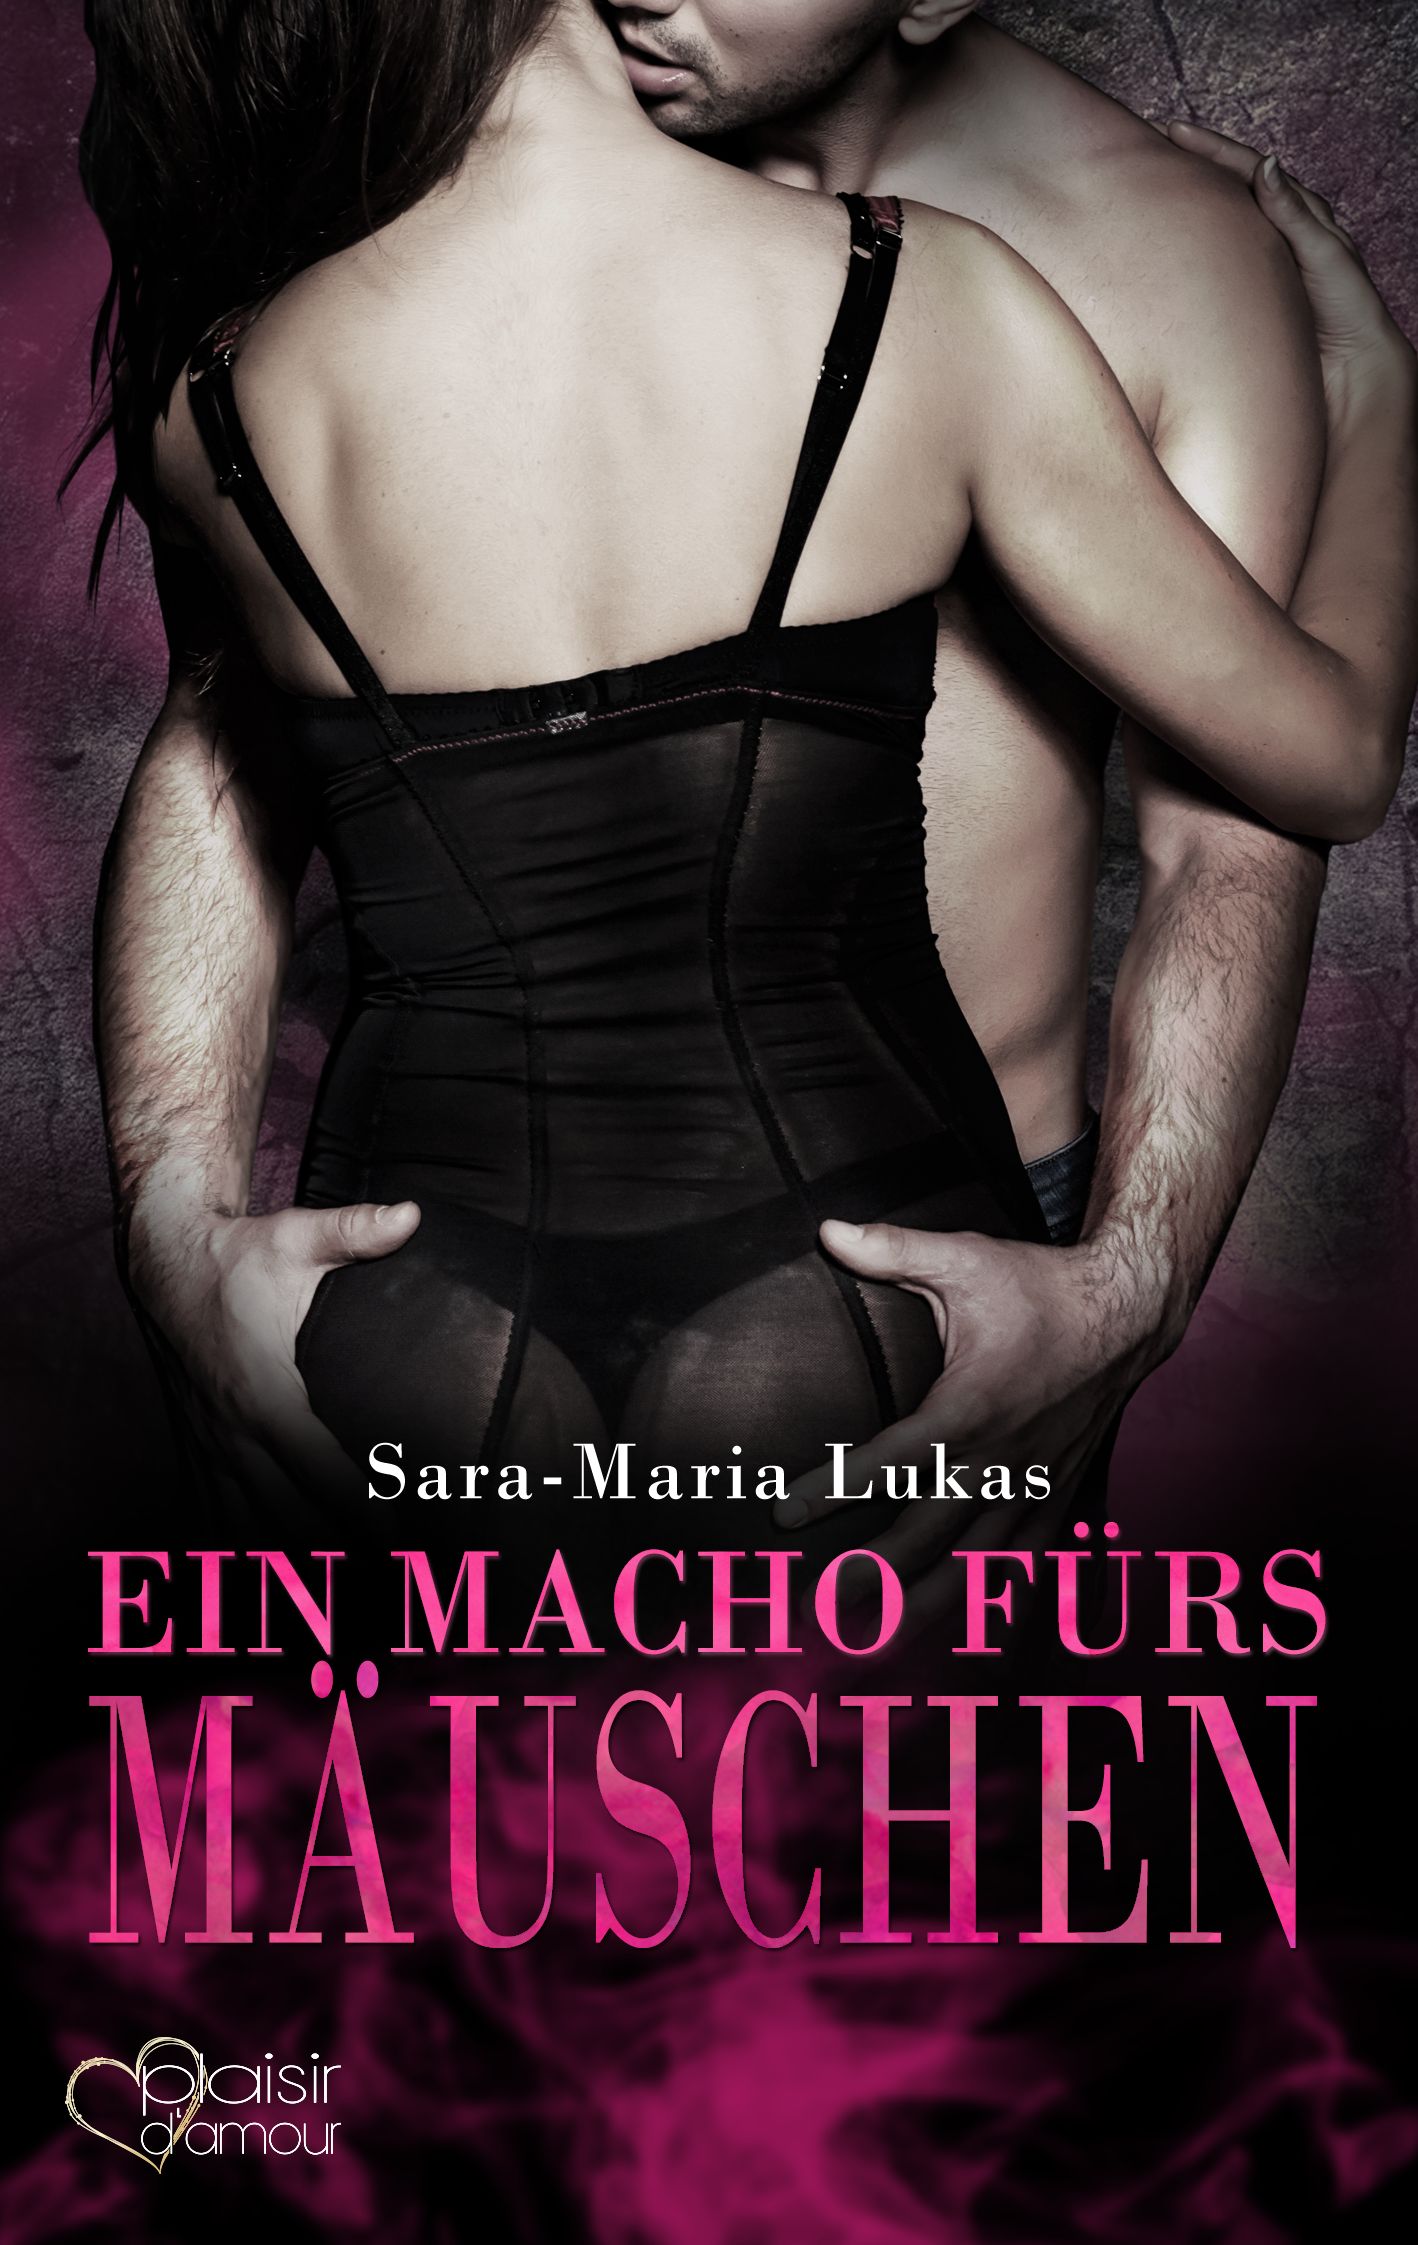 Hard & Heart 4: Ein Macho fürs Mäuschen Sara-Maria Lukas - Picture 1 of 1